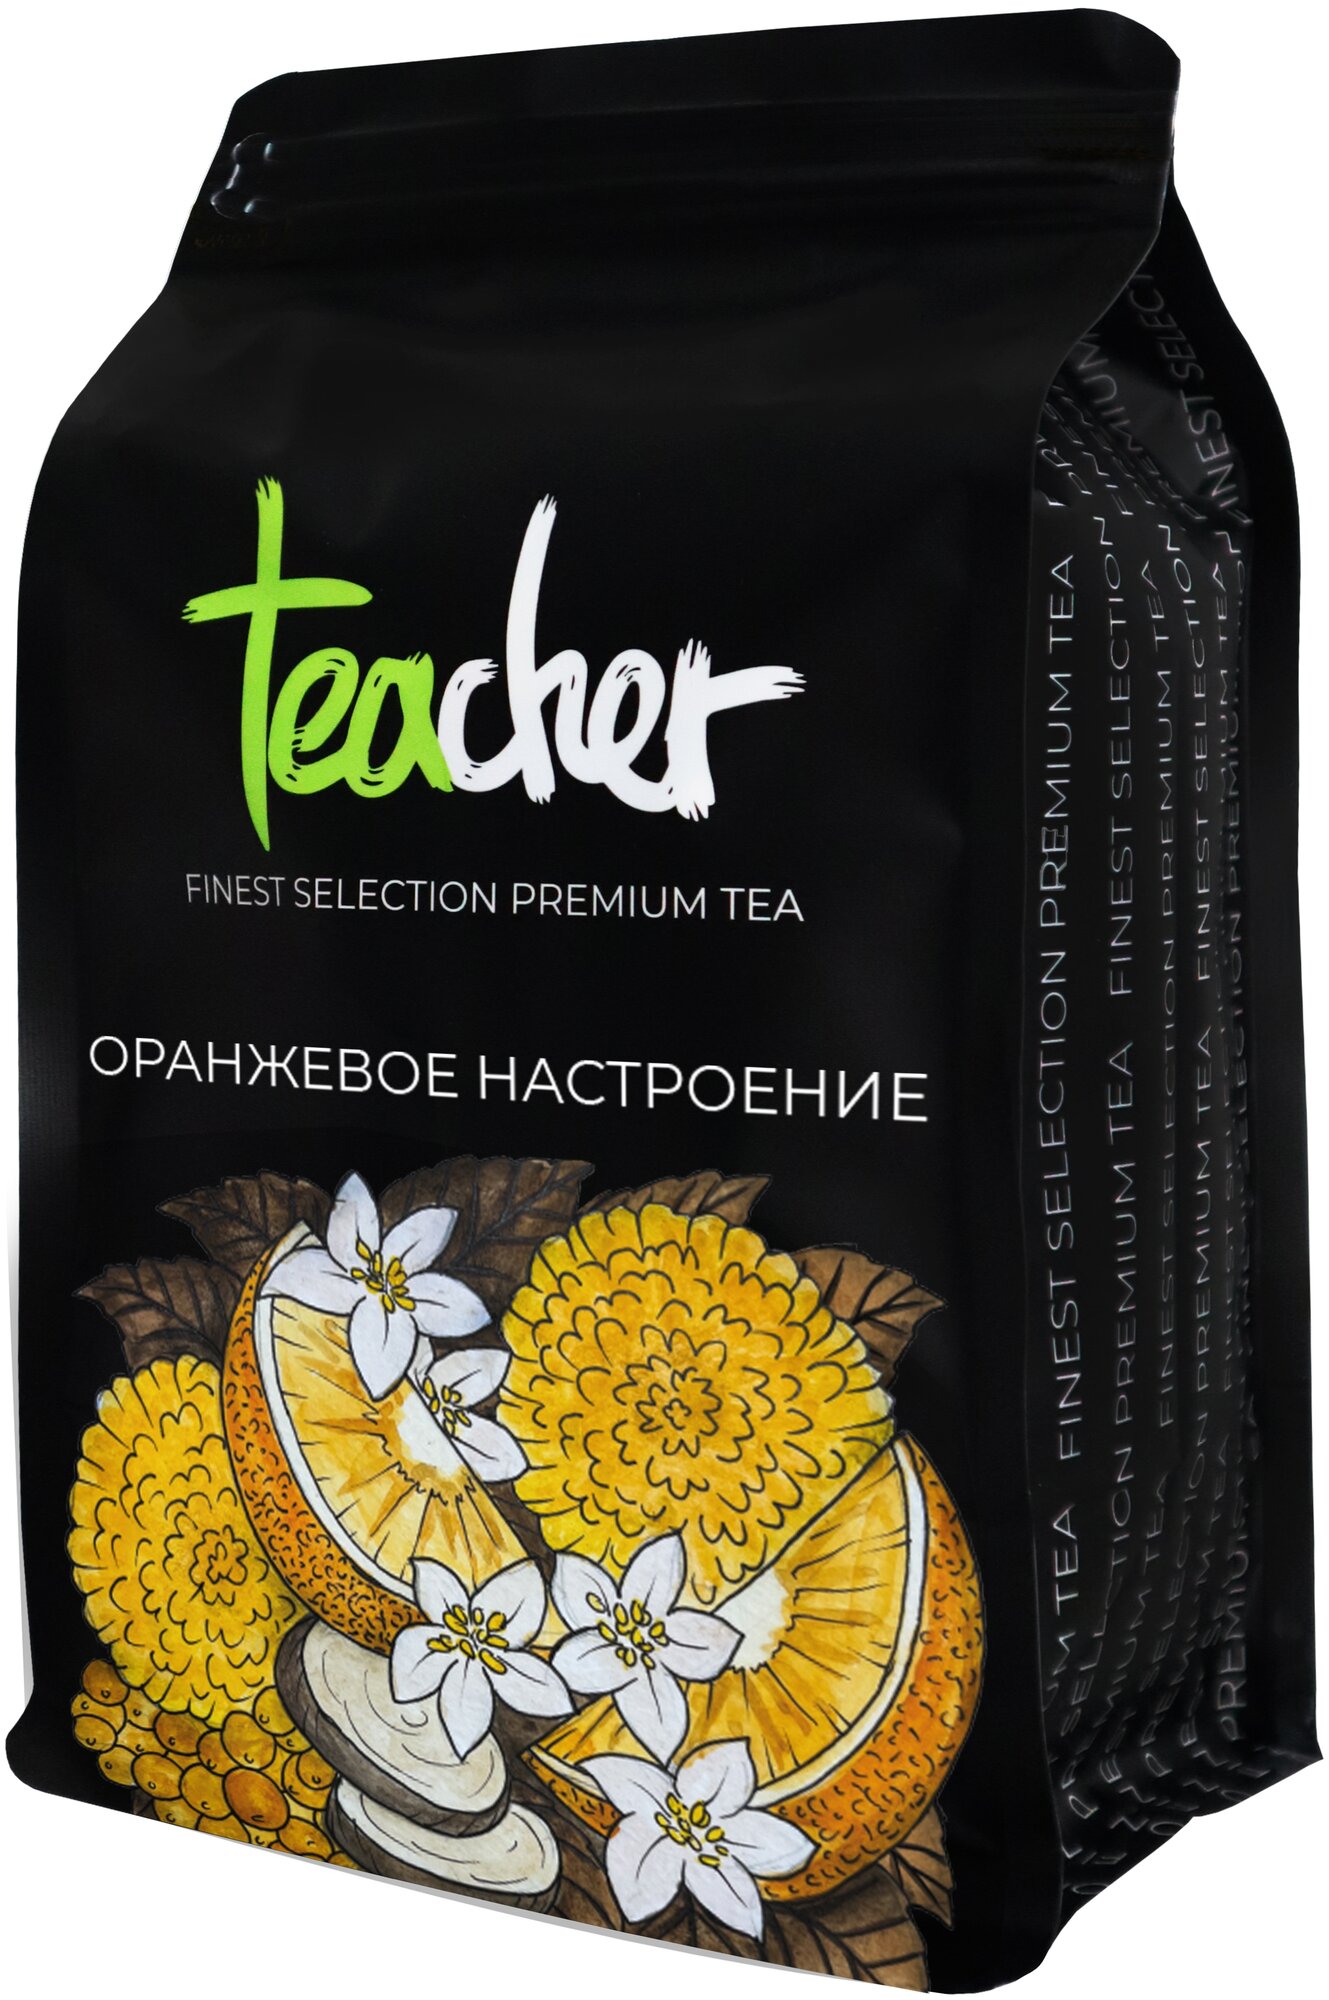 Чай TEACHER Оранжевое настроение 500 г черный листовой фруктовый цитрусовый рассыпной весовой - фотография № 6